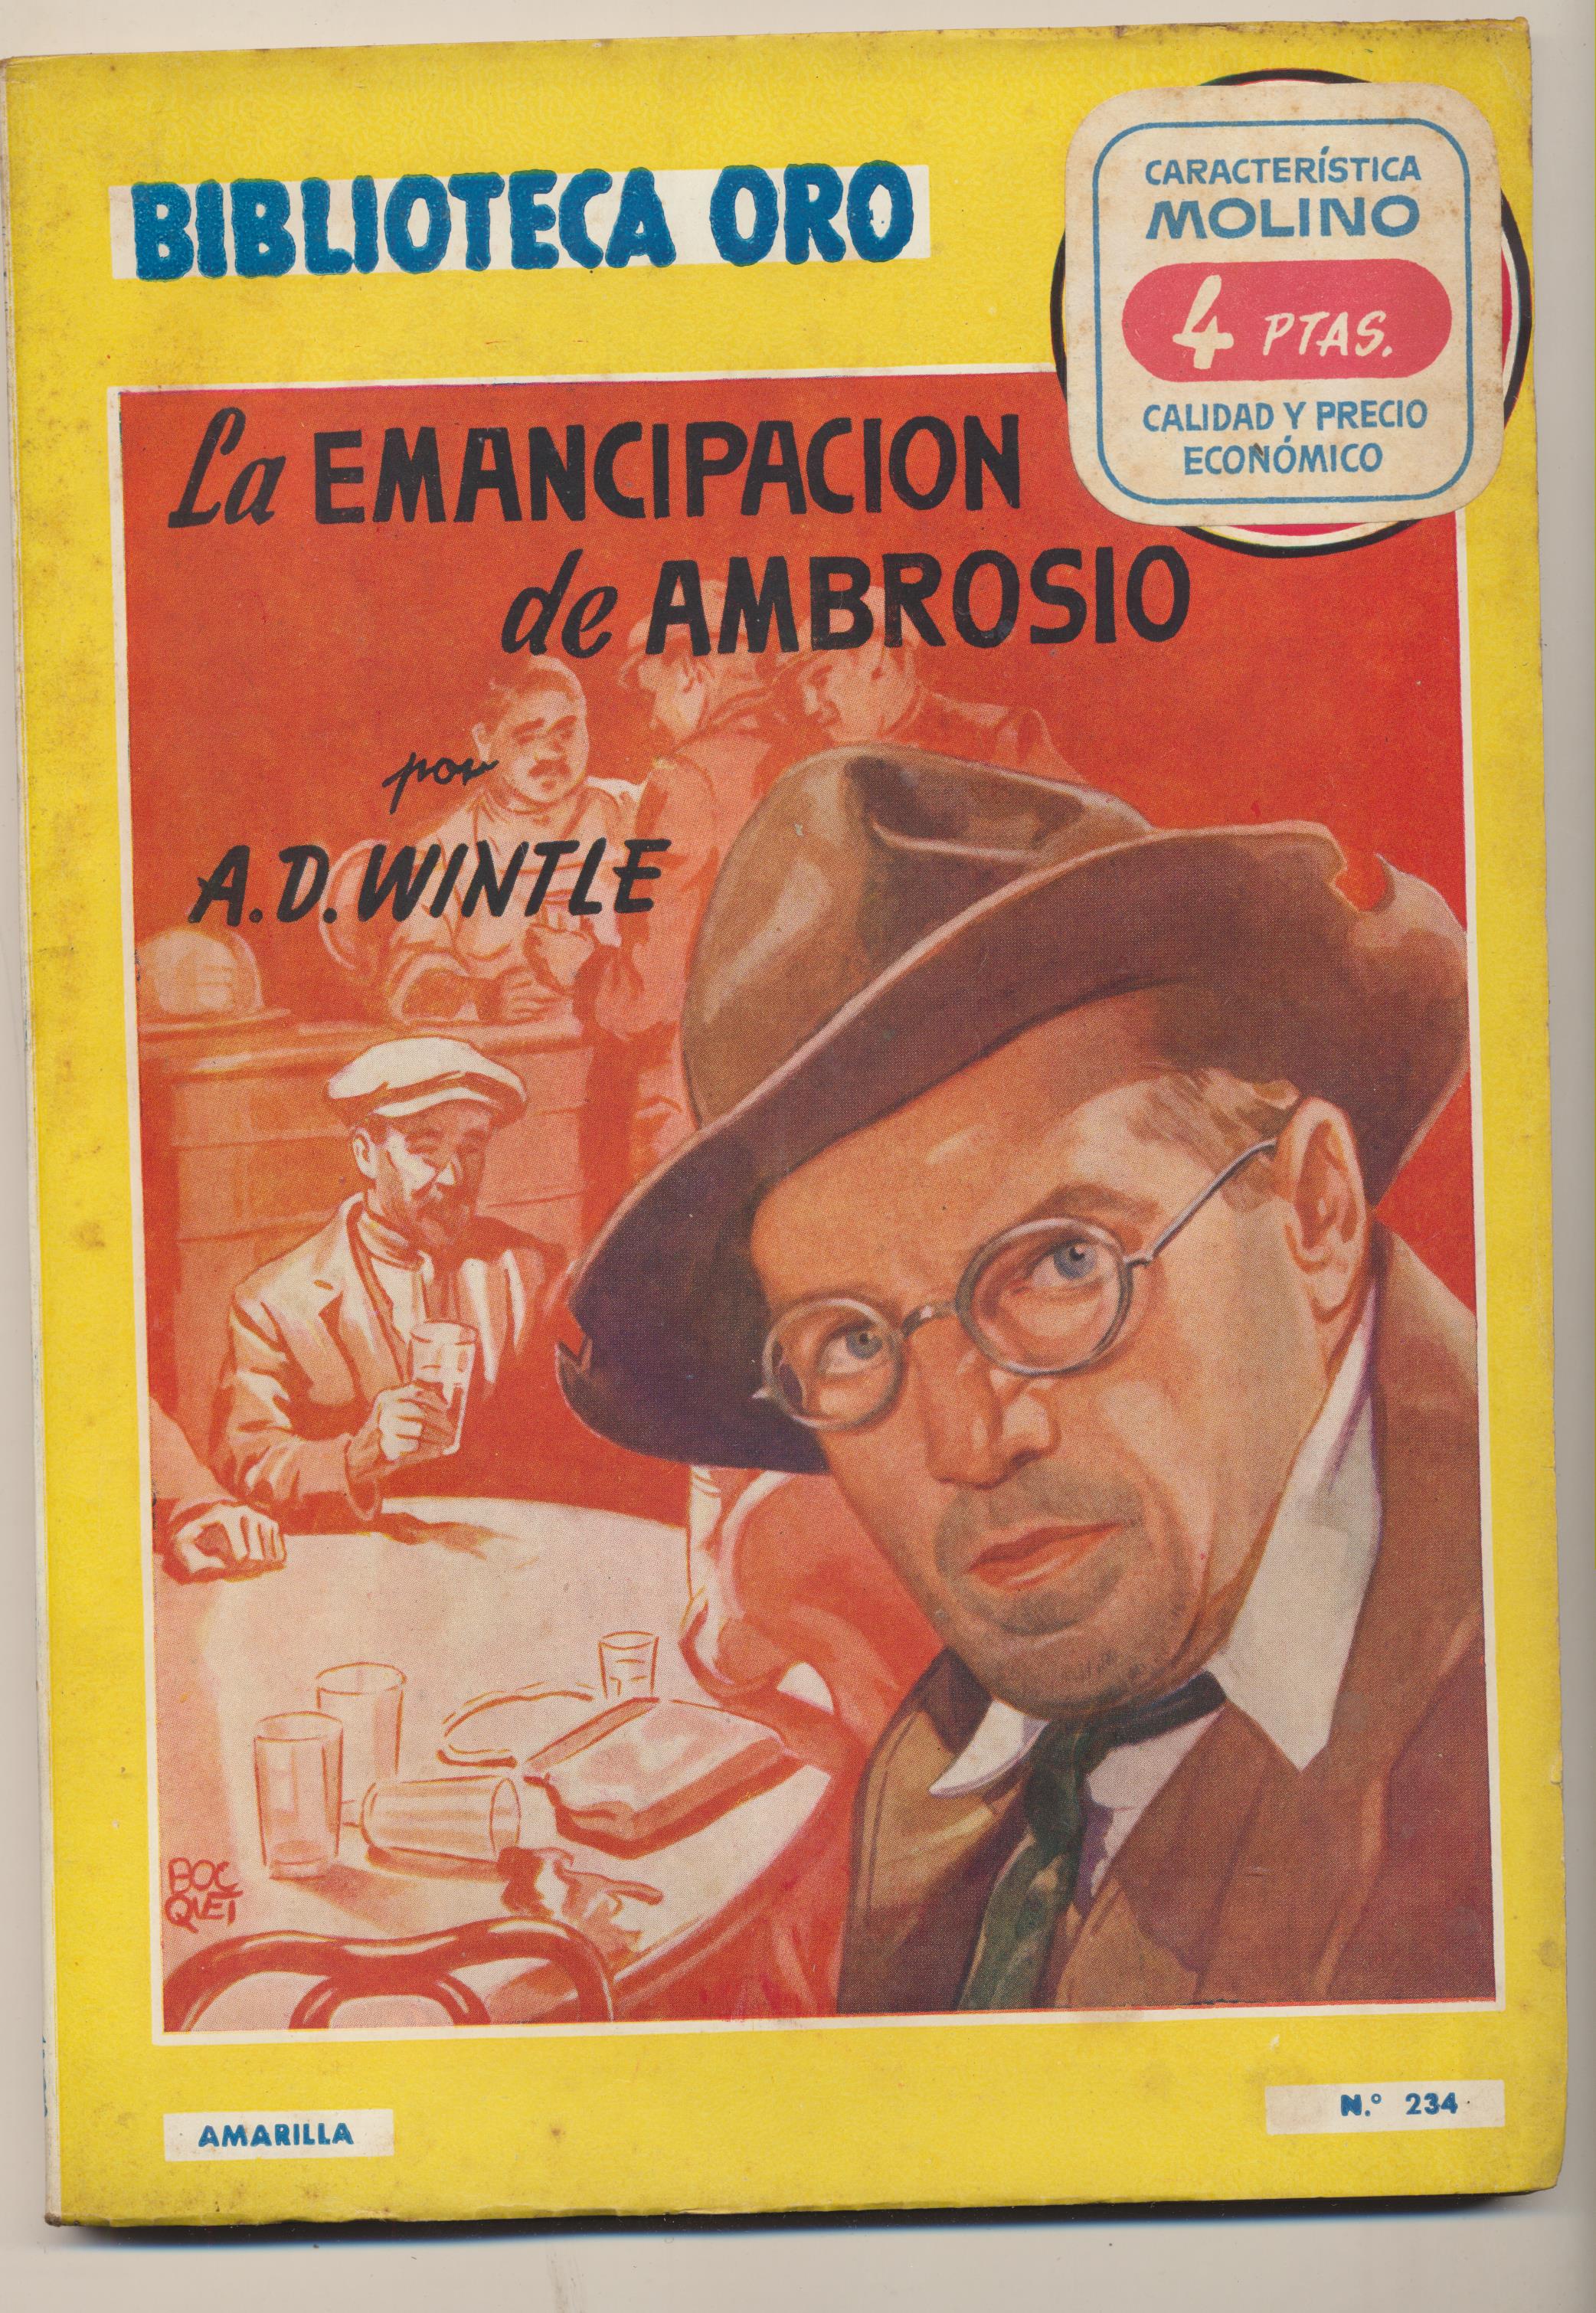 Biblioteca Oro nº 2234. A.D.Wintle. La emancipación de Ambrosio. Molino 1948